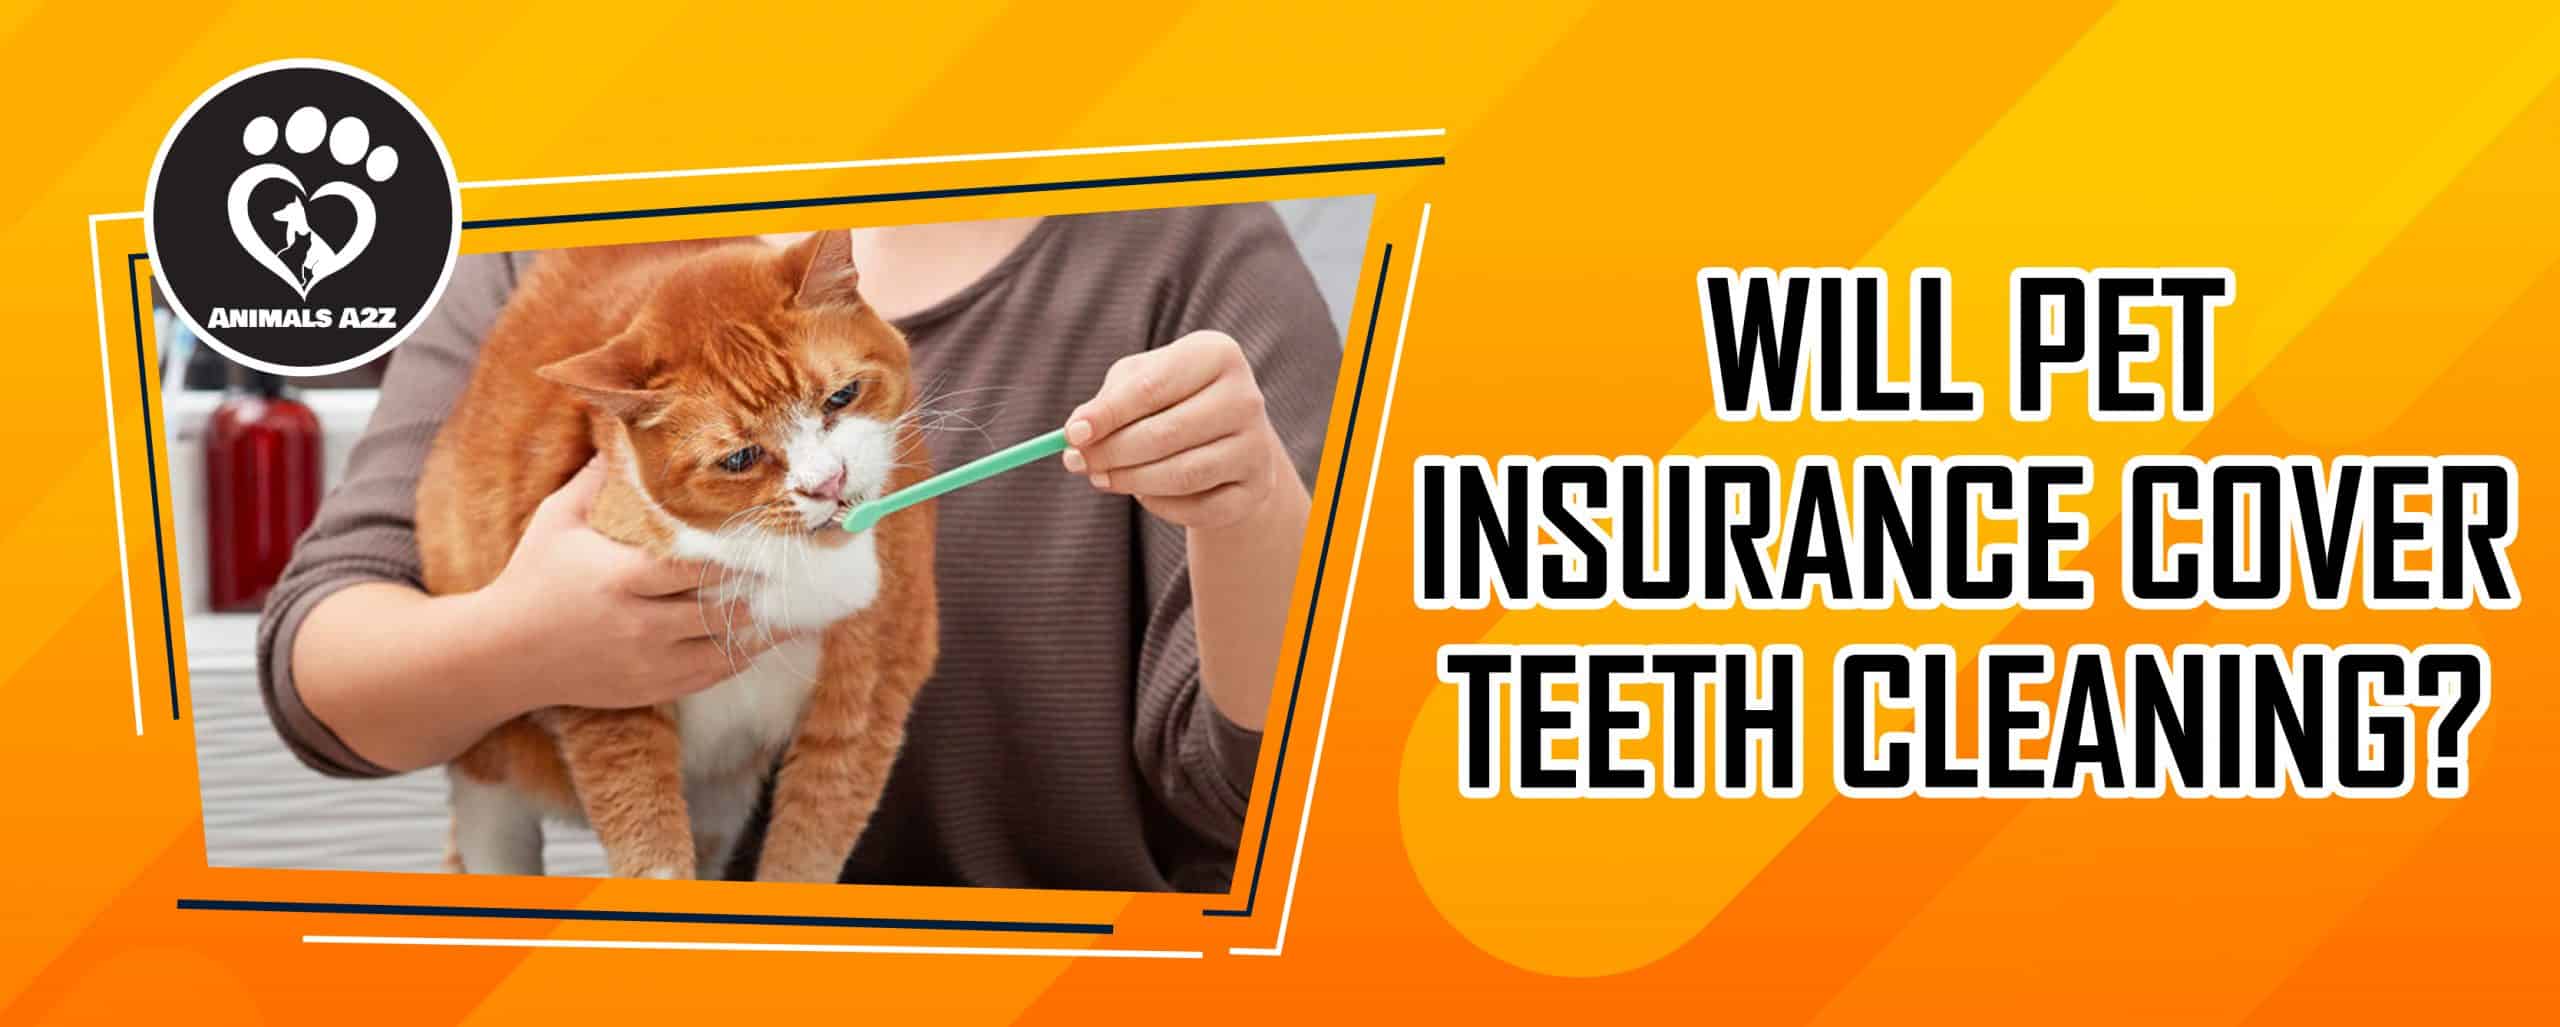 Wird die Zahnreinigung von Haustieren von der Versicherung übernommen?